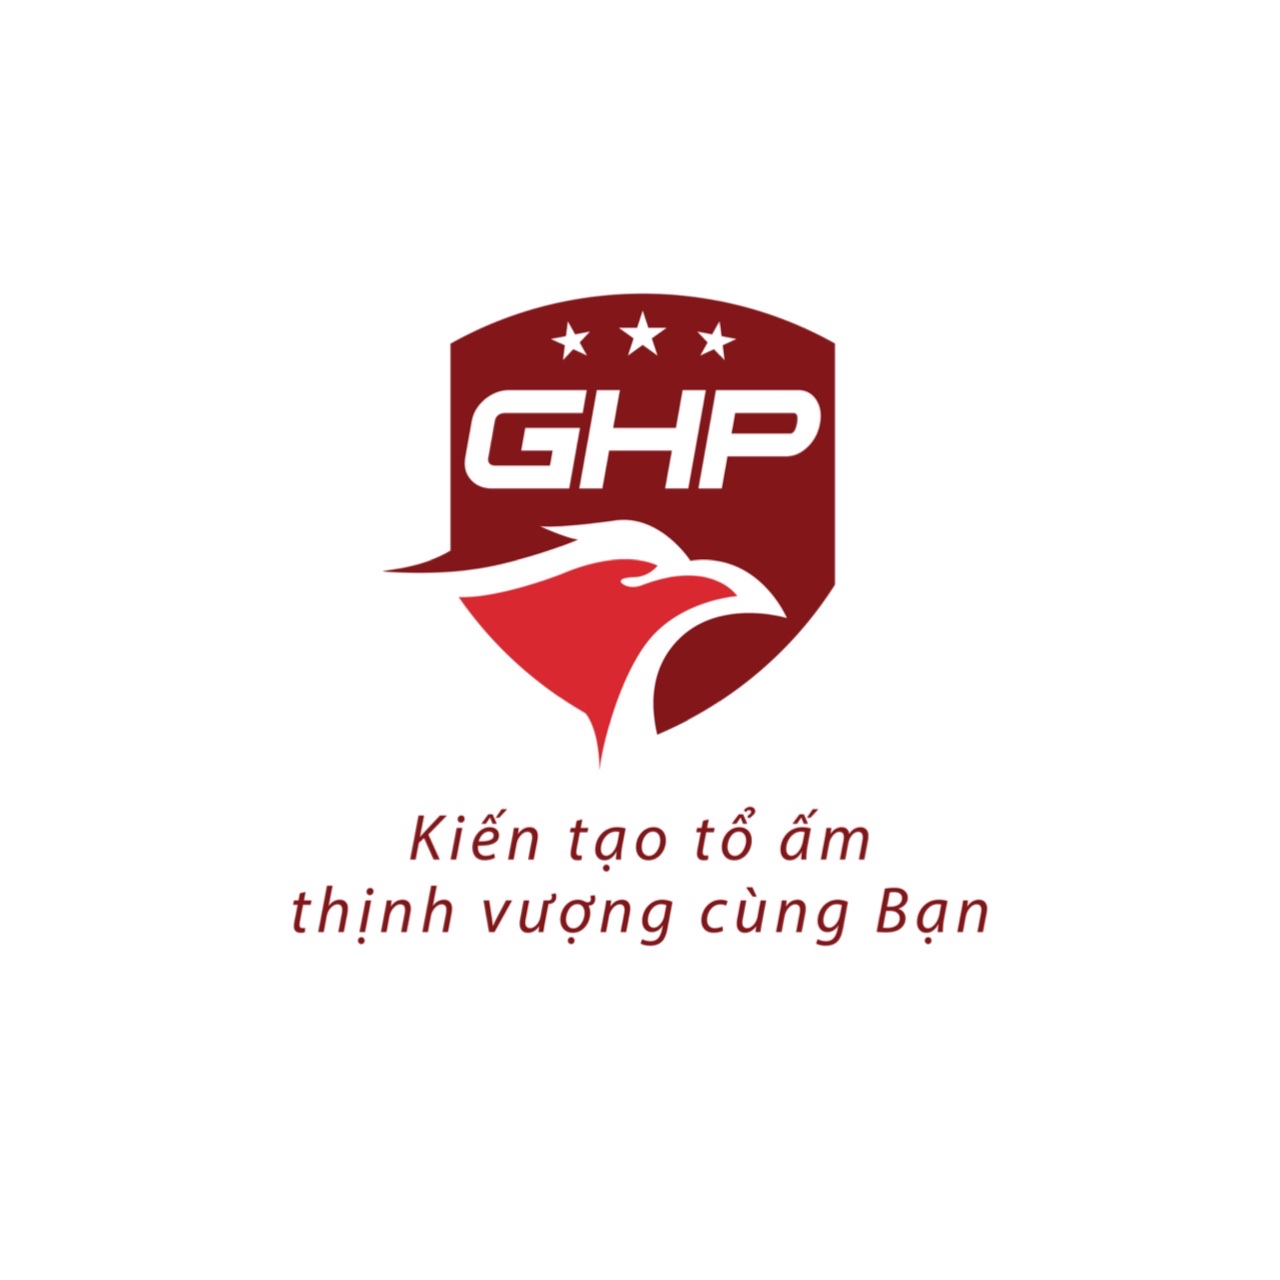 Cần bán nhà hẻm đường Võ VănTần, Phường 5, Quận 3. Giá 3.5 tỷ